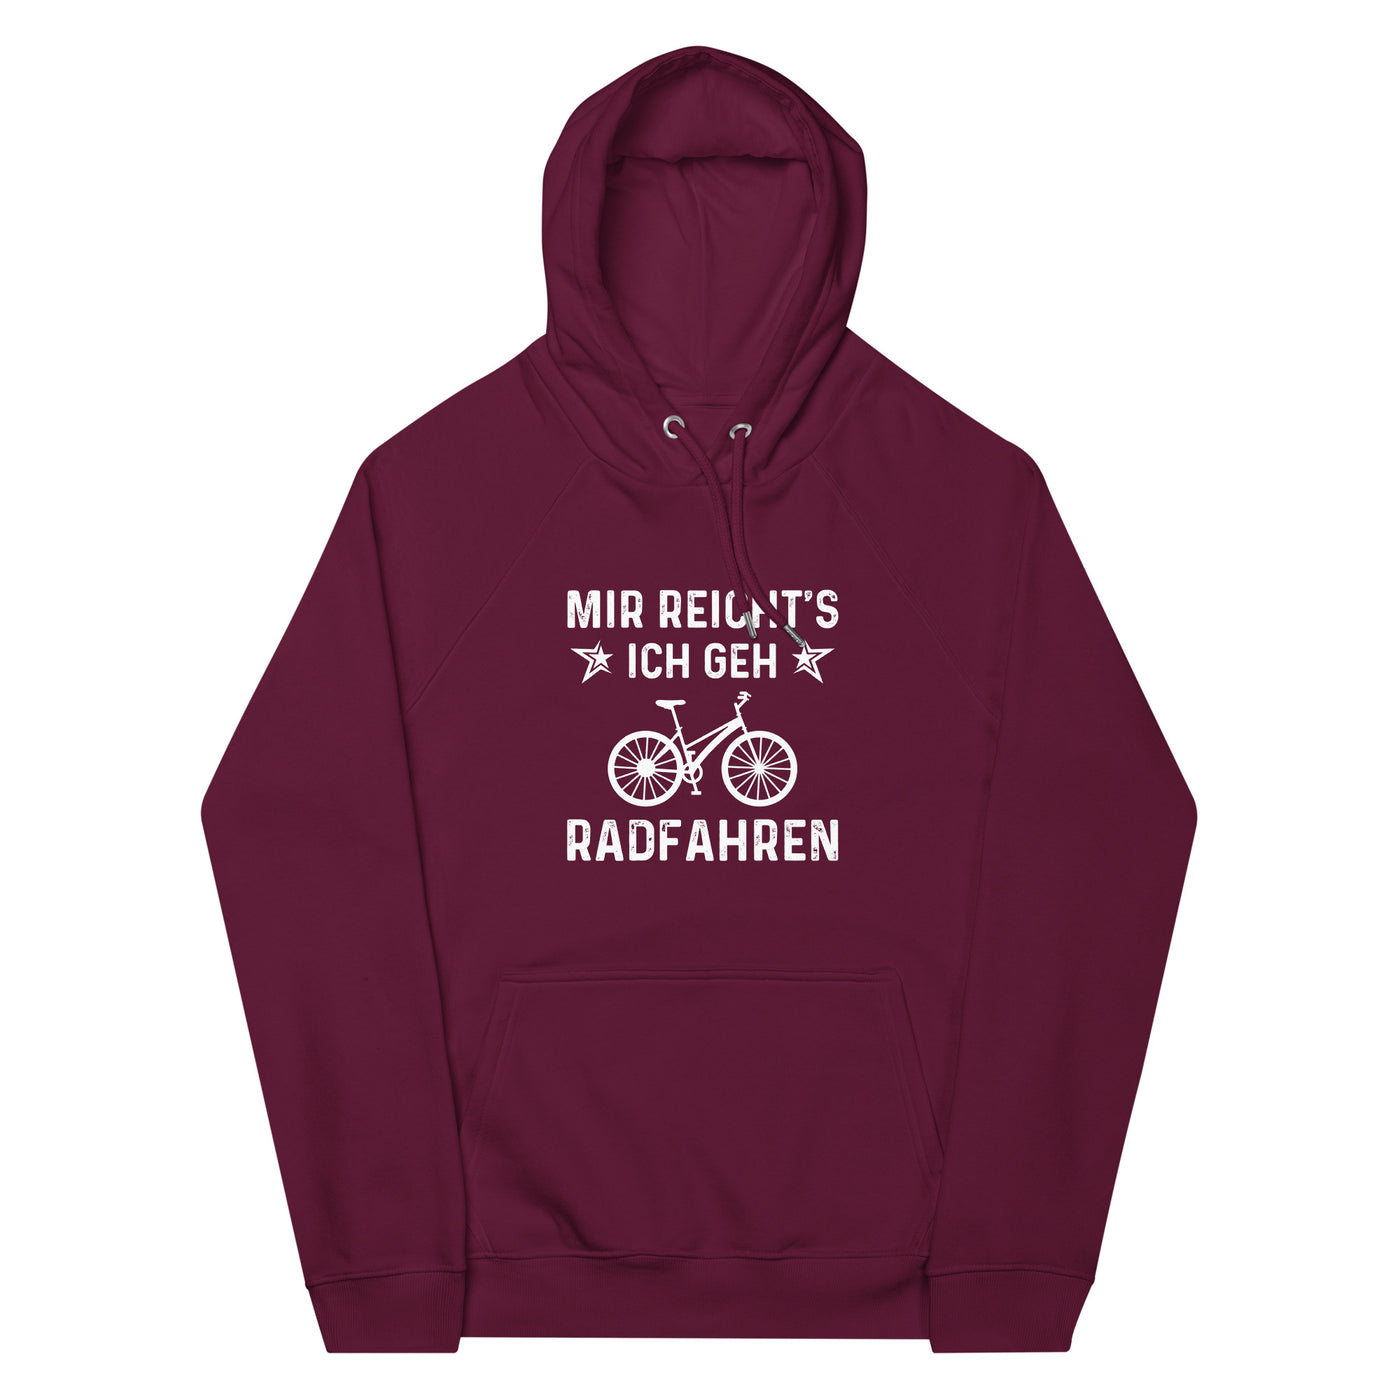 Mir Reicht's Ich Gen Radfahren - Unisex Premium Organic Hoodie fahrrad xxx yyy zzz Burgundy